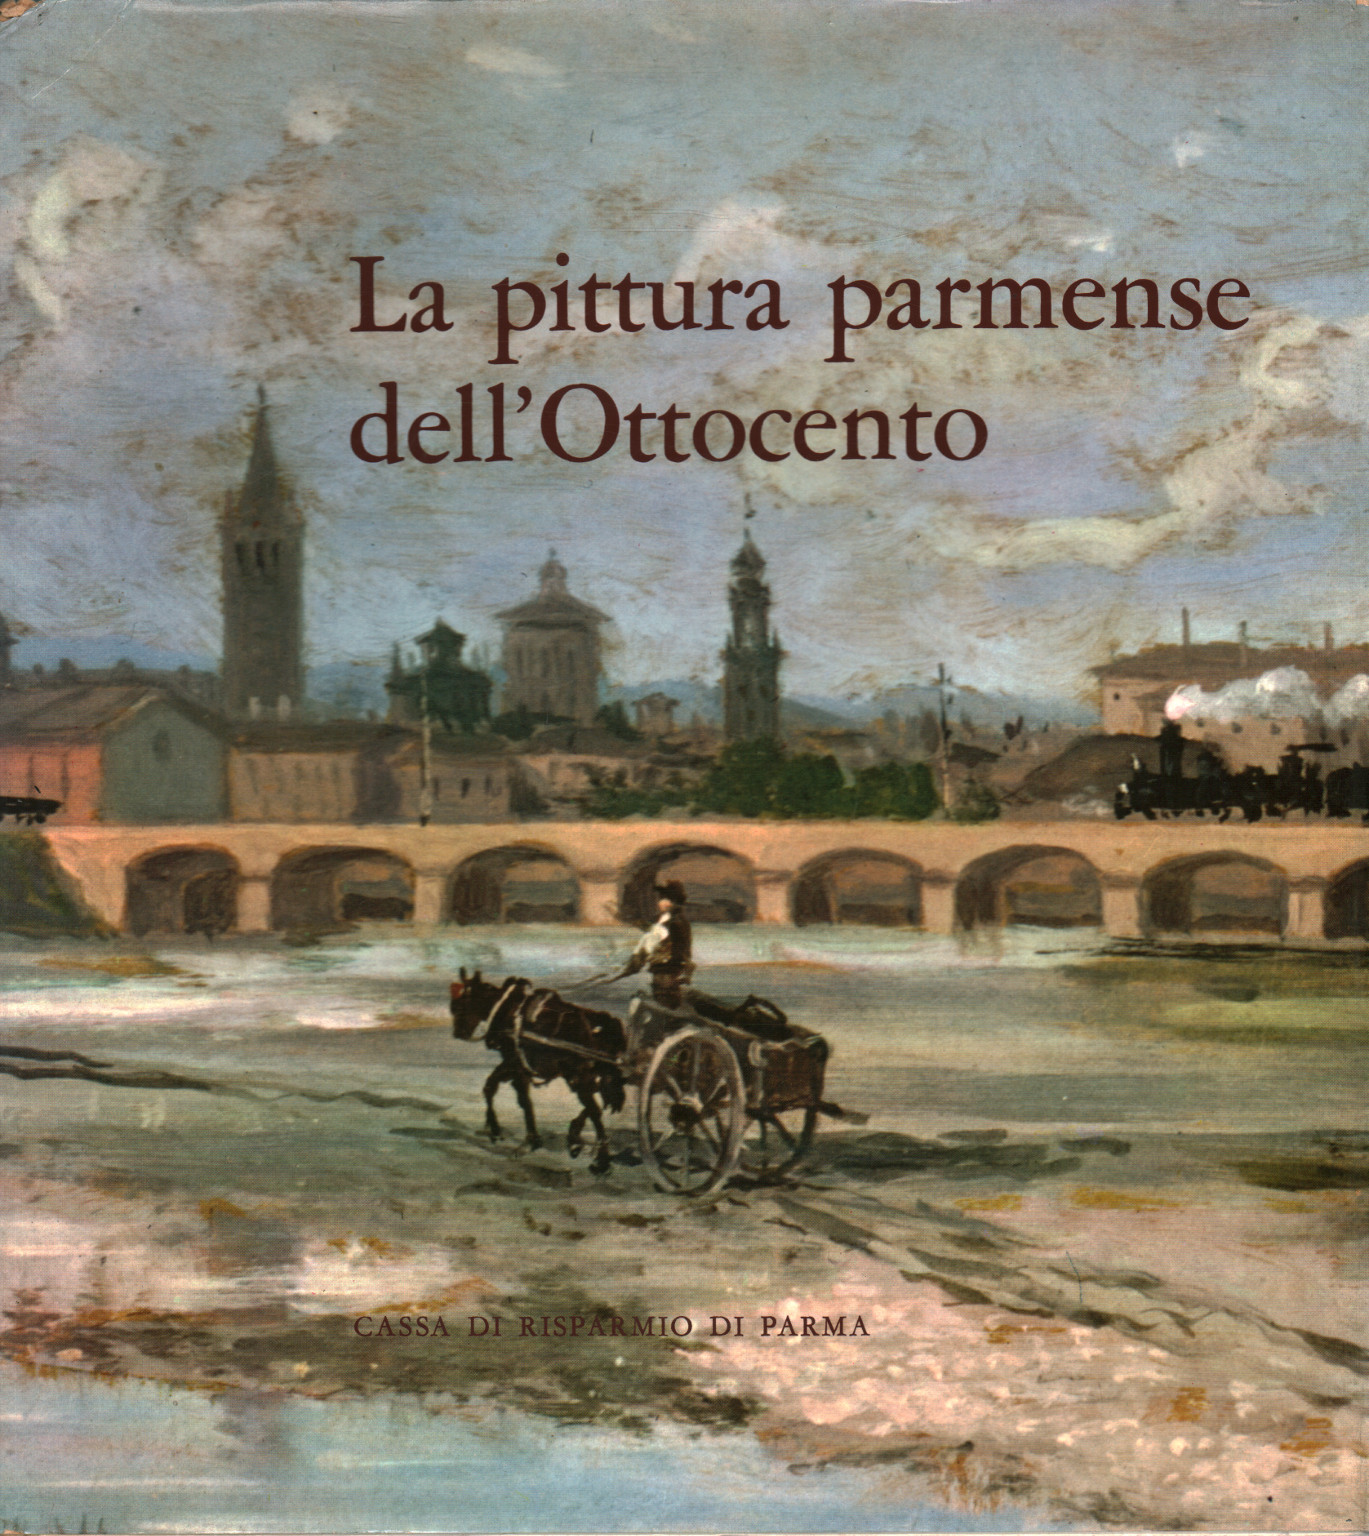 Pintura de Parma del siglo XIX